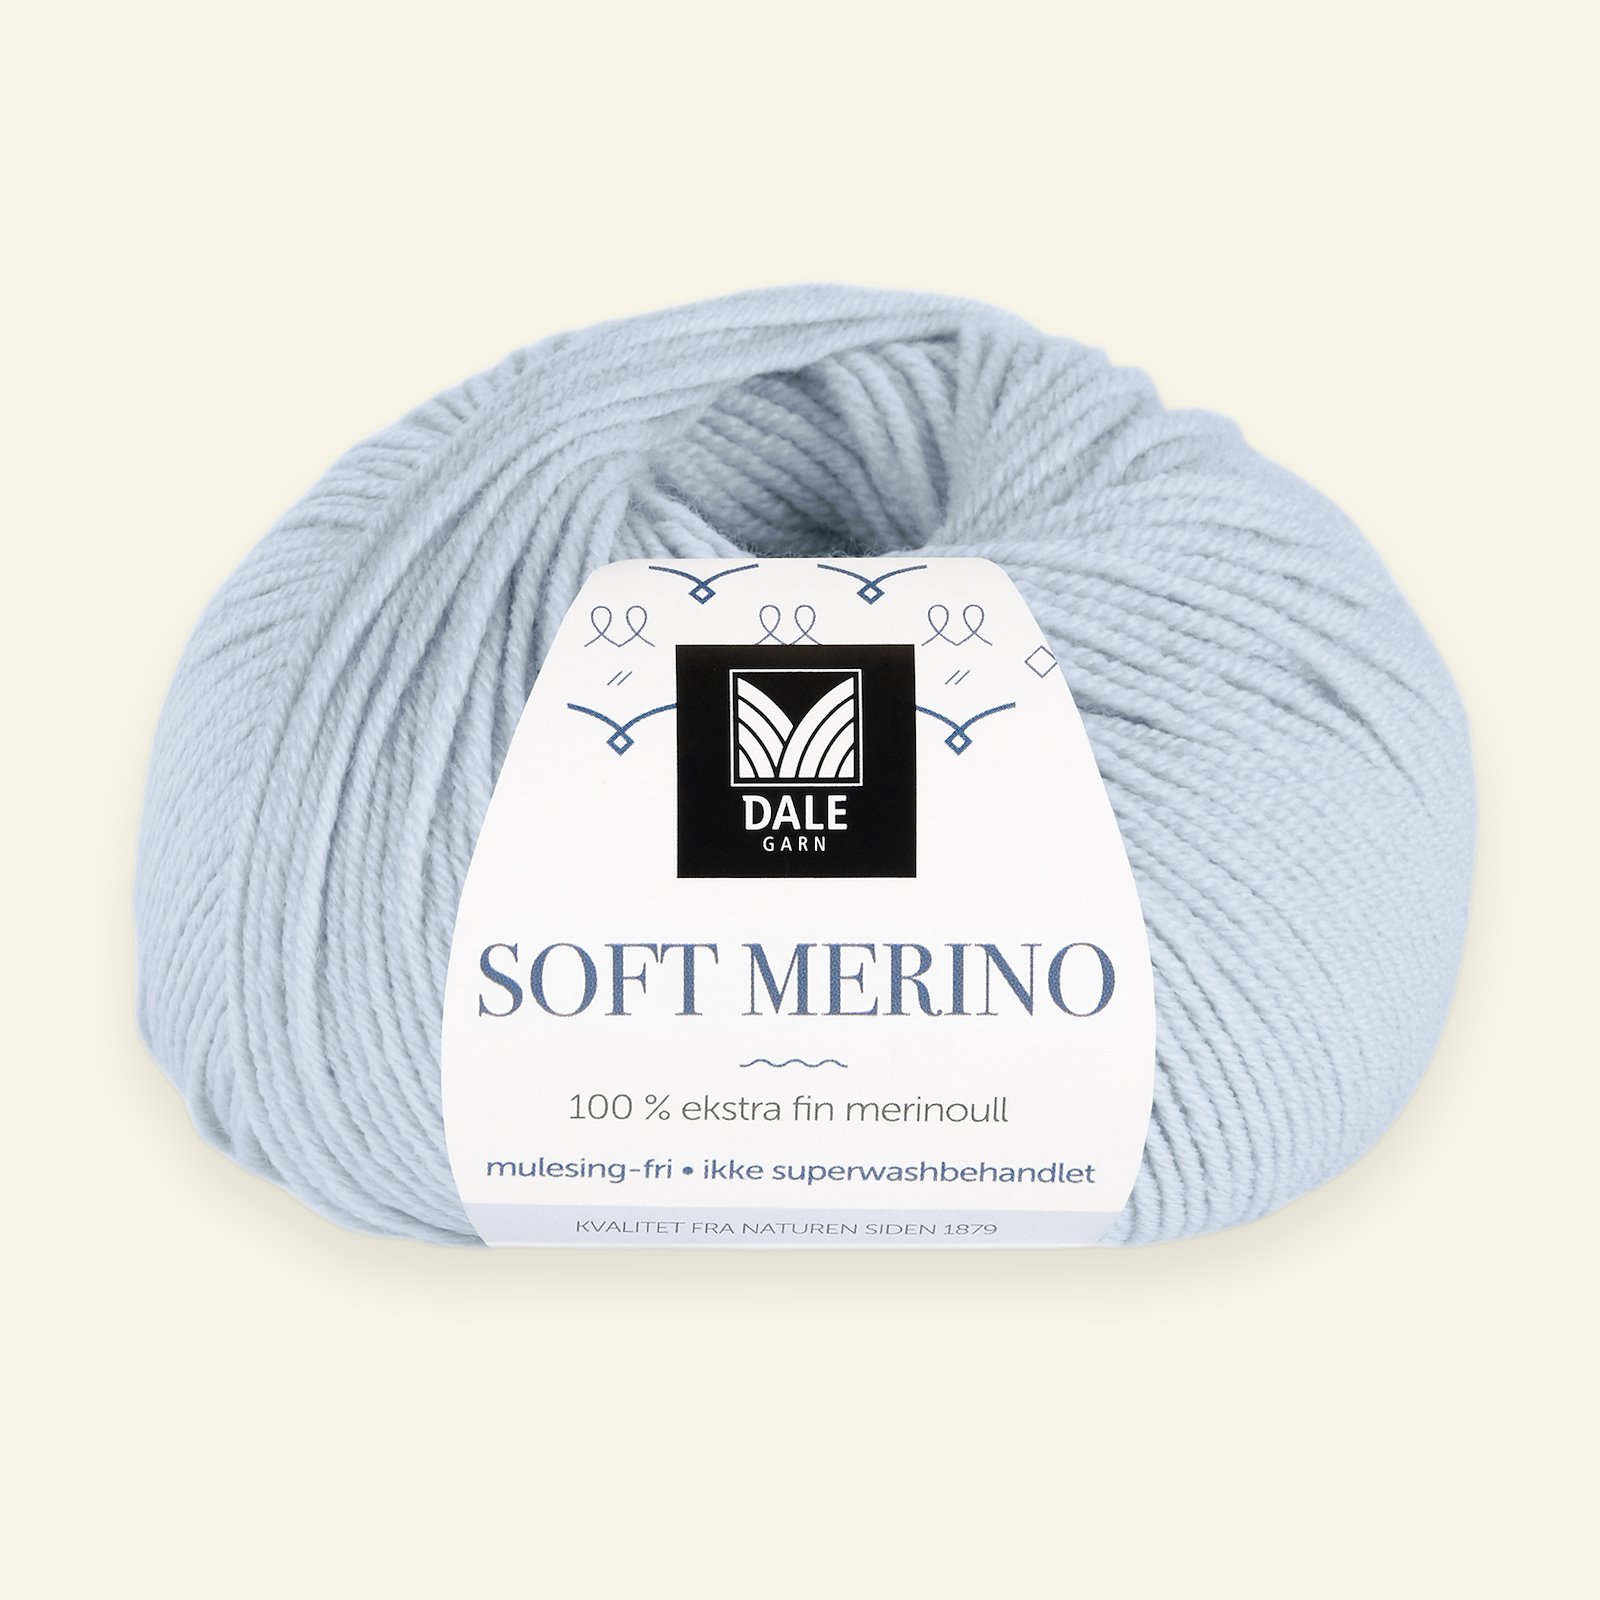 Dale Garn, 100% ekstra fint merinogarn "Soft Merino", Lys blå (3011) 90000332_pack